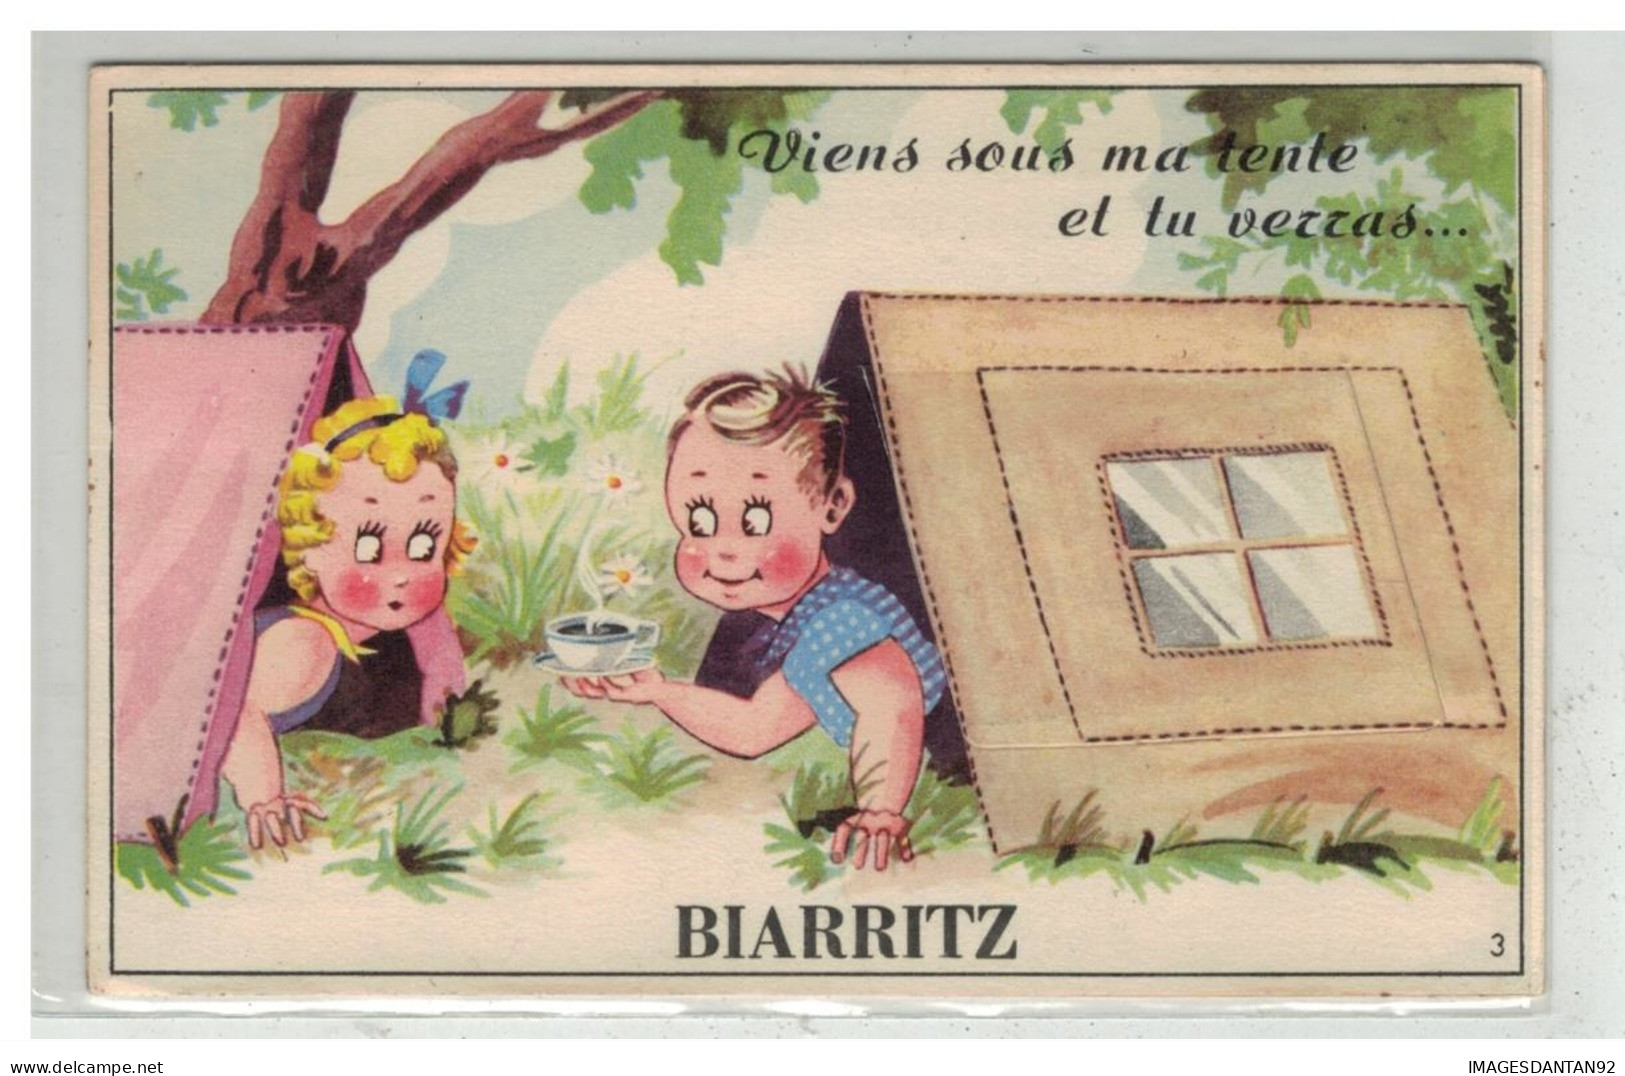 64 BIARRITZ #11502 VIENS SOUS MA TENTE CARTE A SYSTEME ENFANTS CAFE - Biarritz